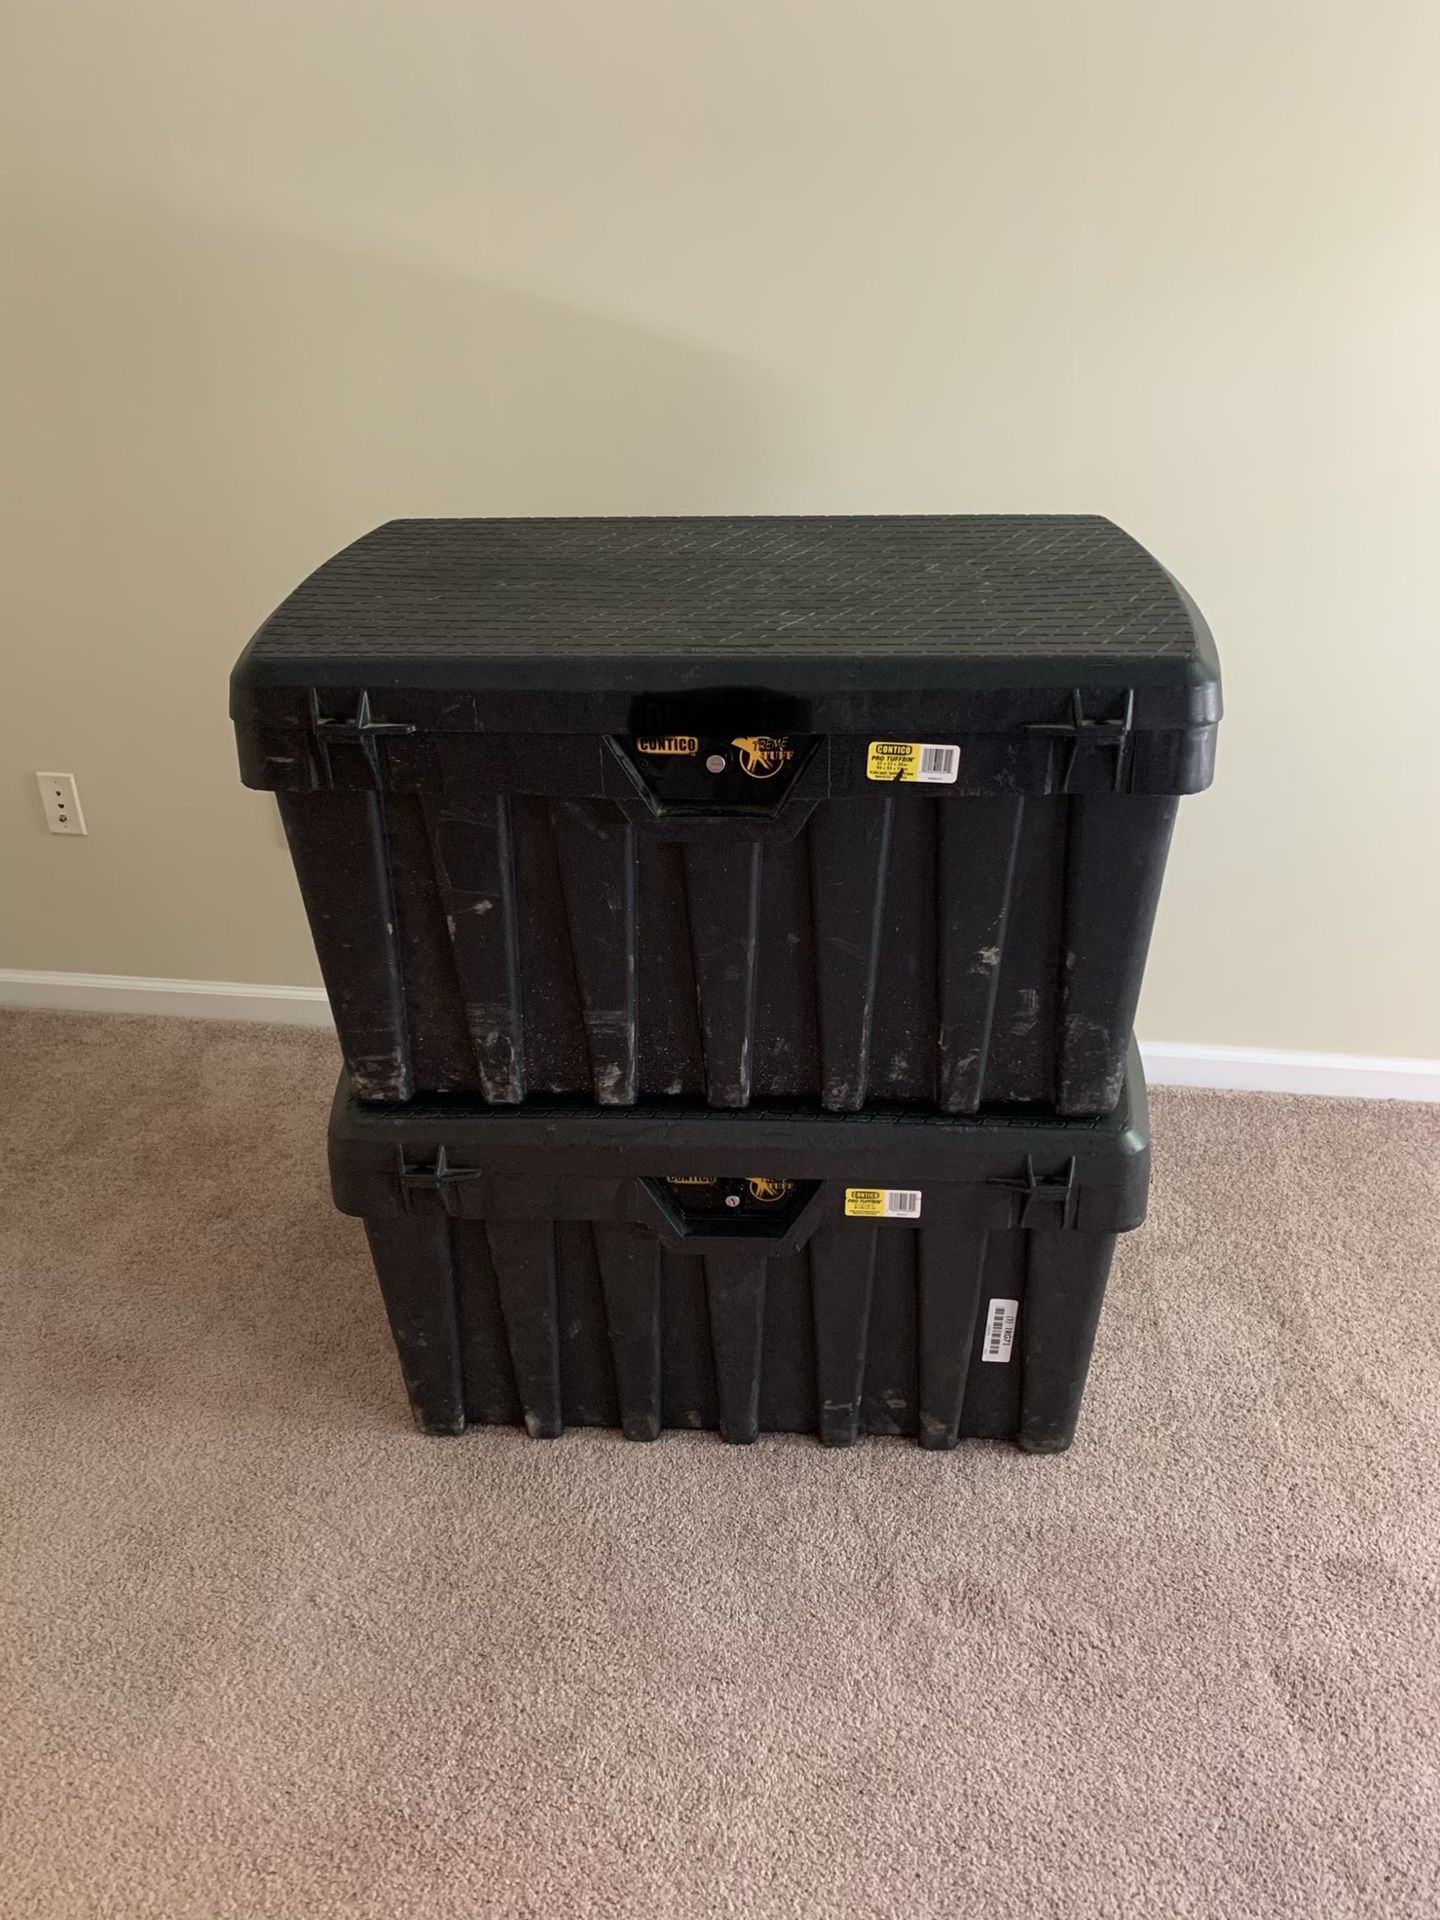 2 Contico Pro Tuff boxes (great tool box)